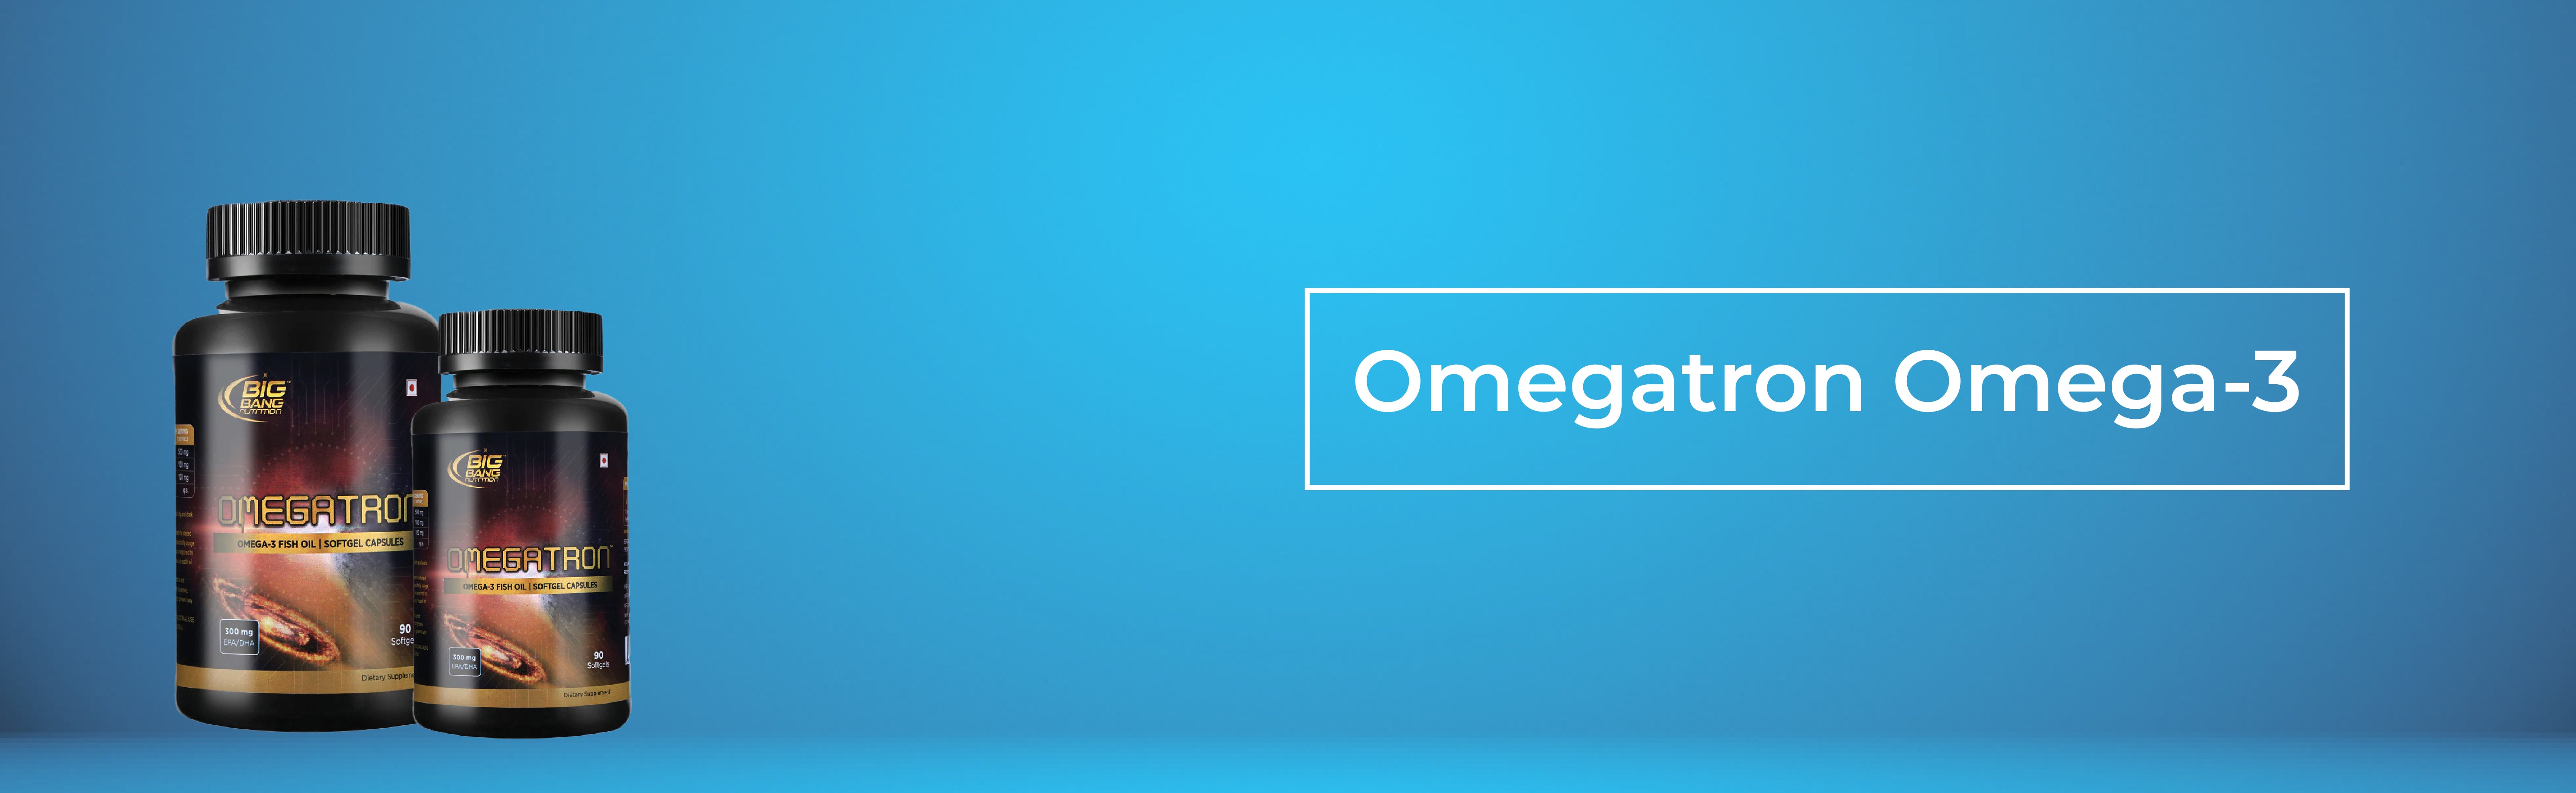 omegatron omega